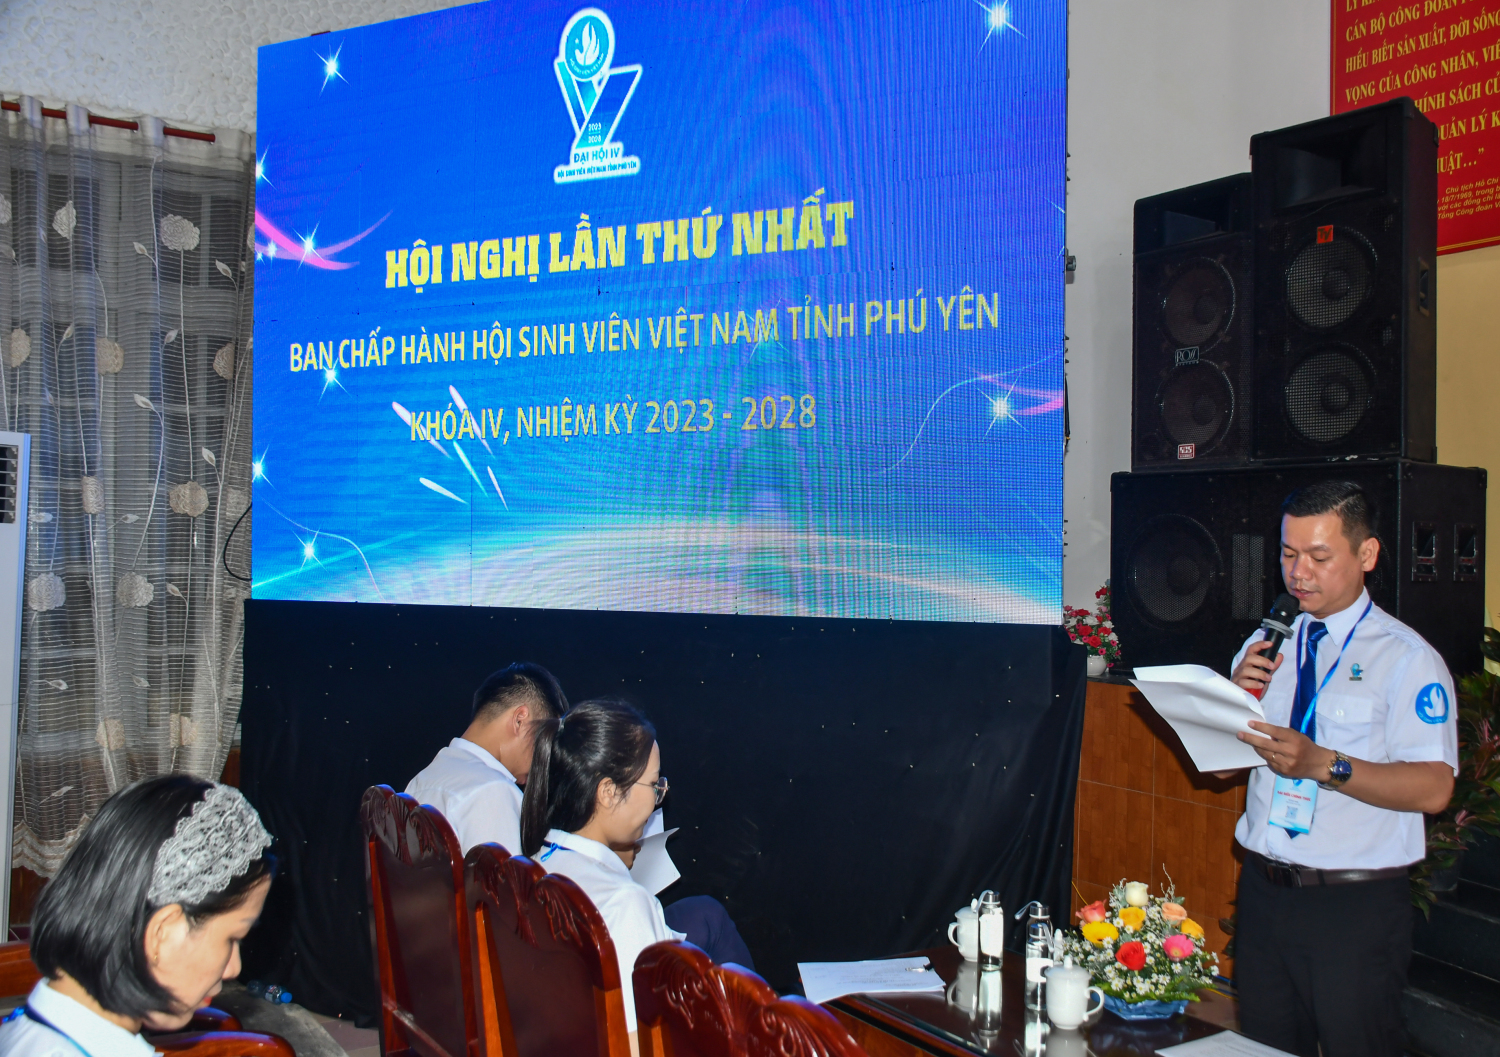 Đồng chí Võ Duy Kha, Phó Bí thư Tỉnh Đoàn, Chủ tịch Hội Sinh viên Việt Nam tỉnh Phú Yên khoá III phát biểu tại hội nghị.